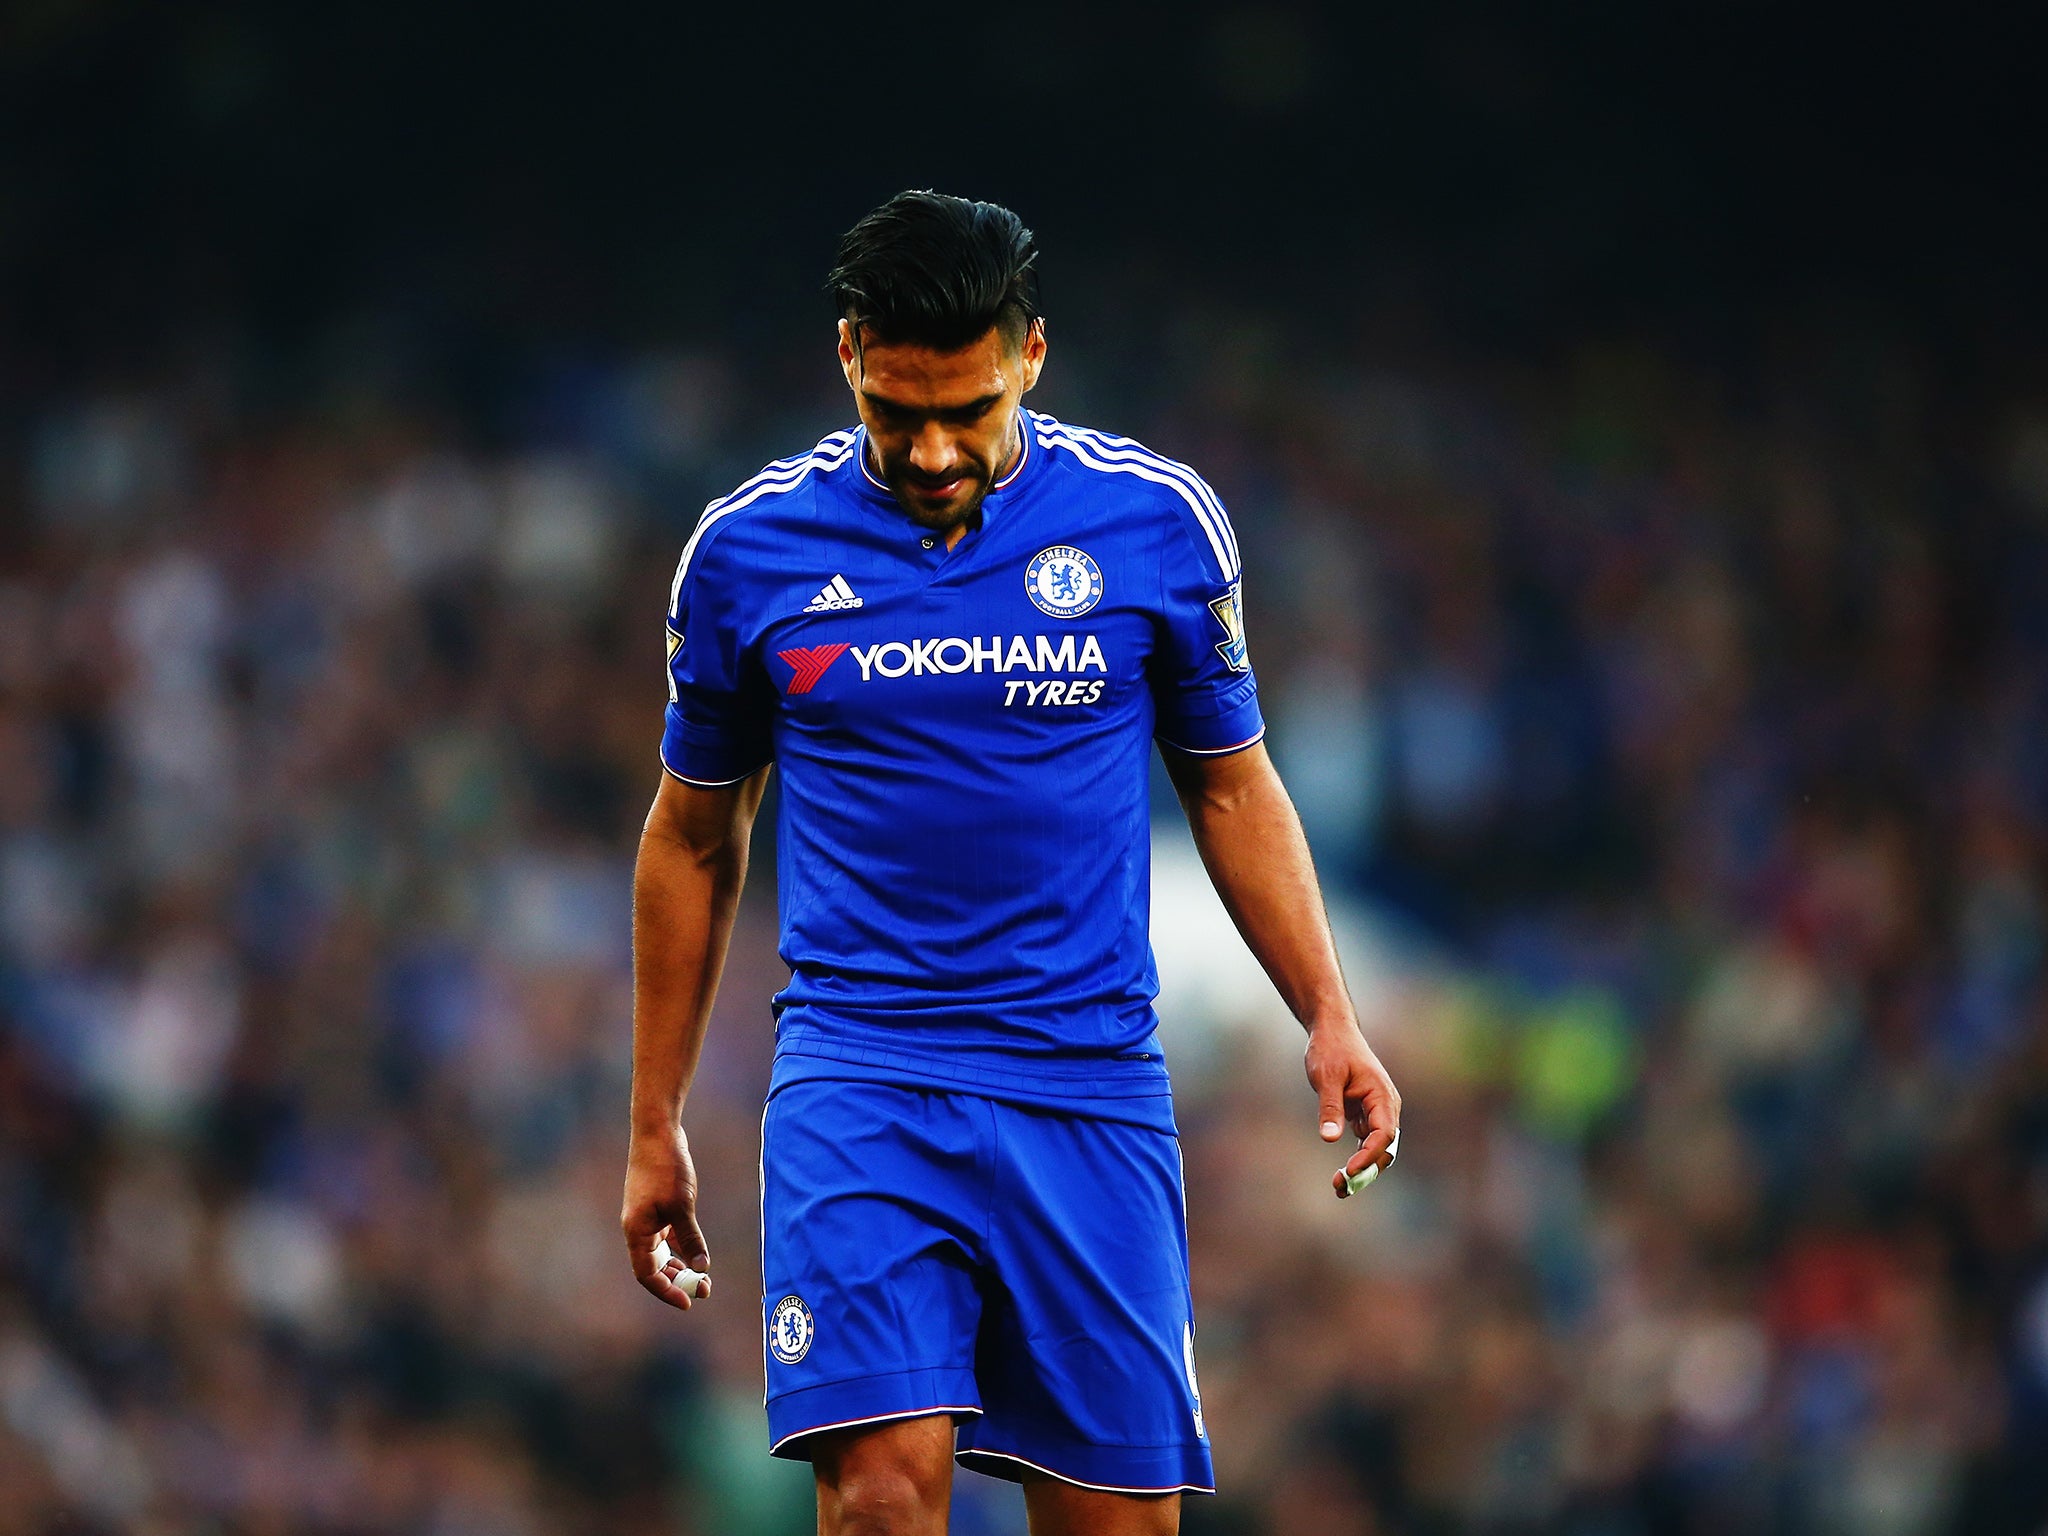 Chelsea's on loan striker Radamel Falcao